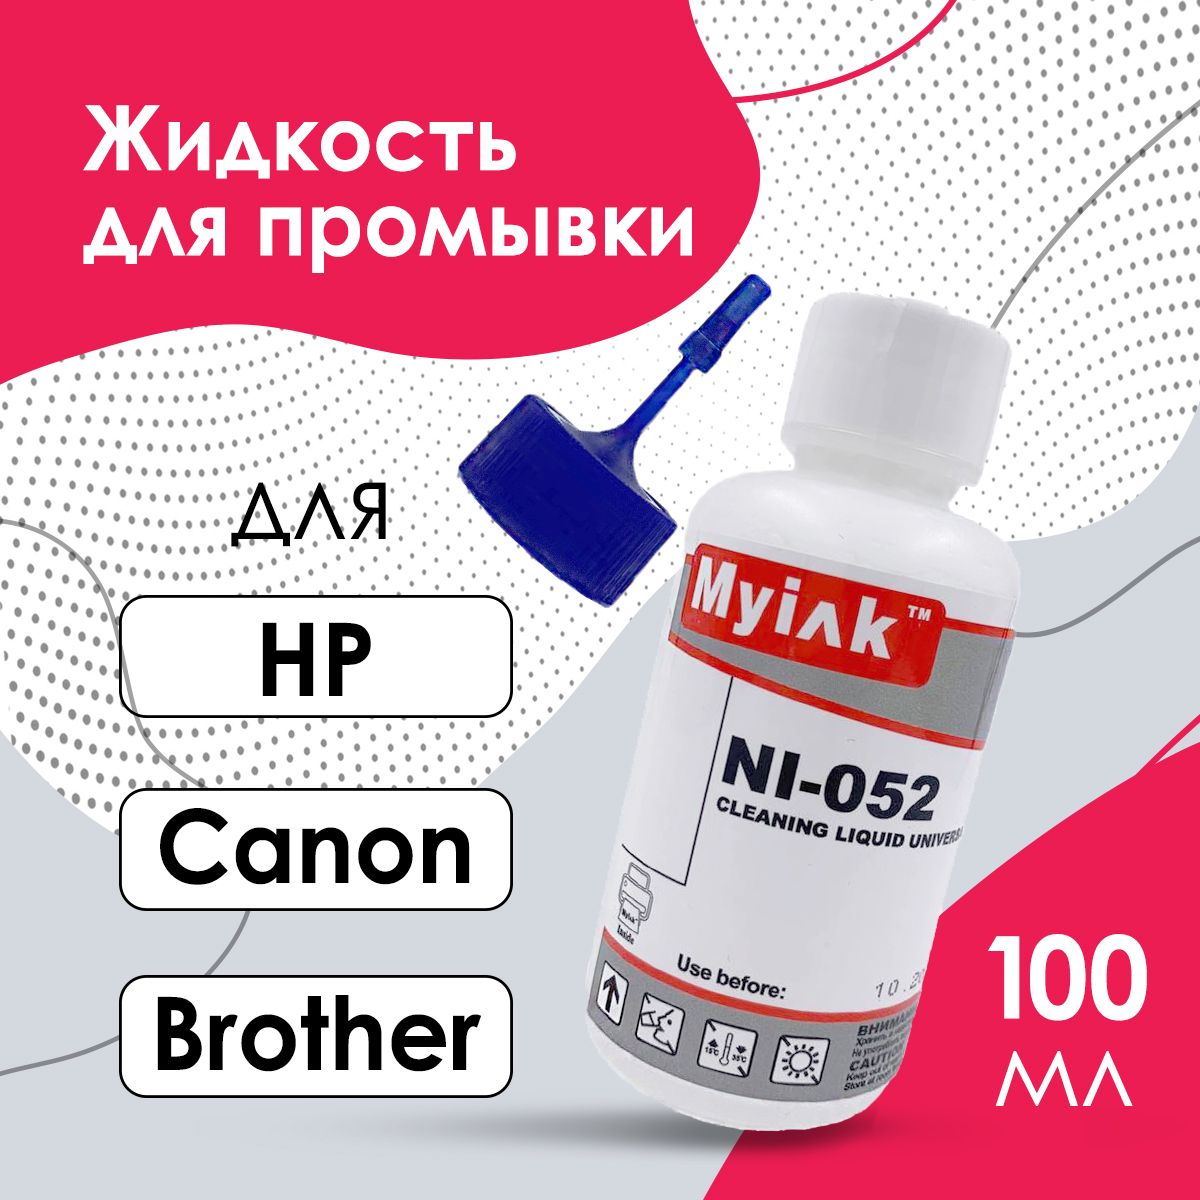 Промывочная жидкость Cleaning Solution NI-052 универсальная для промывки картриджей